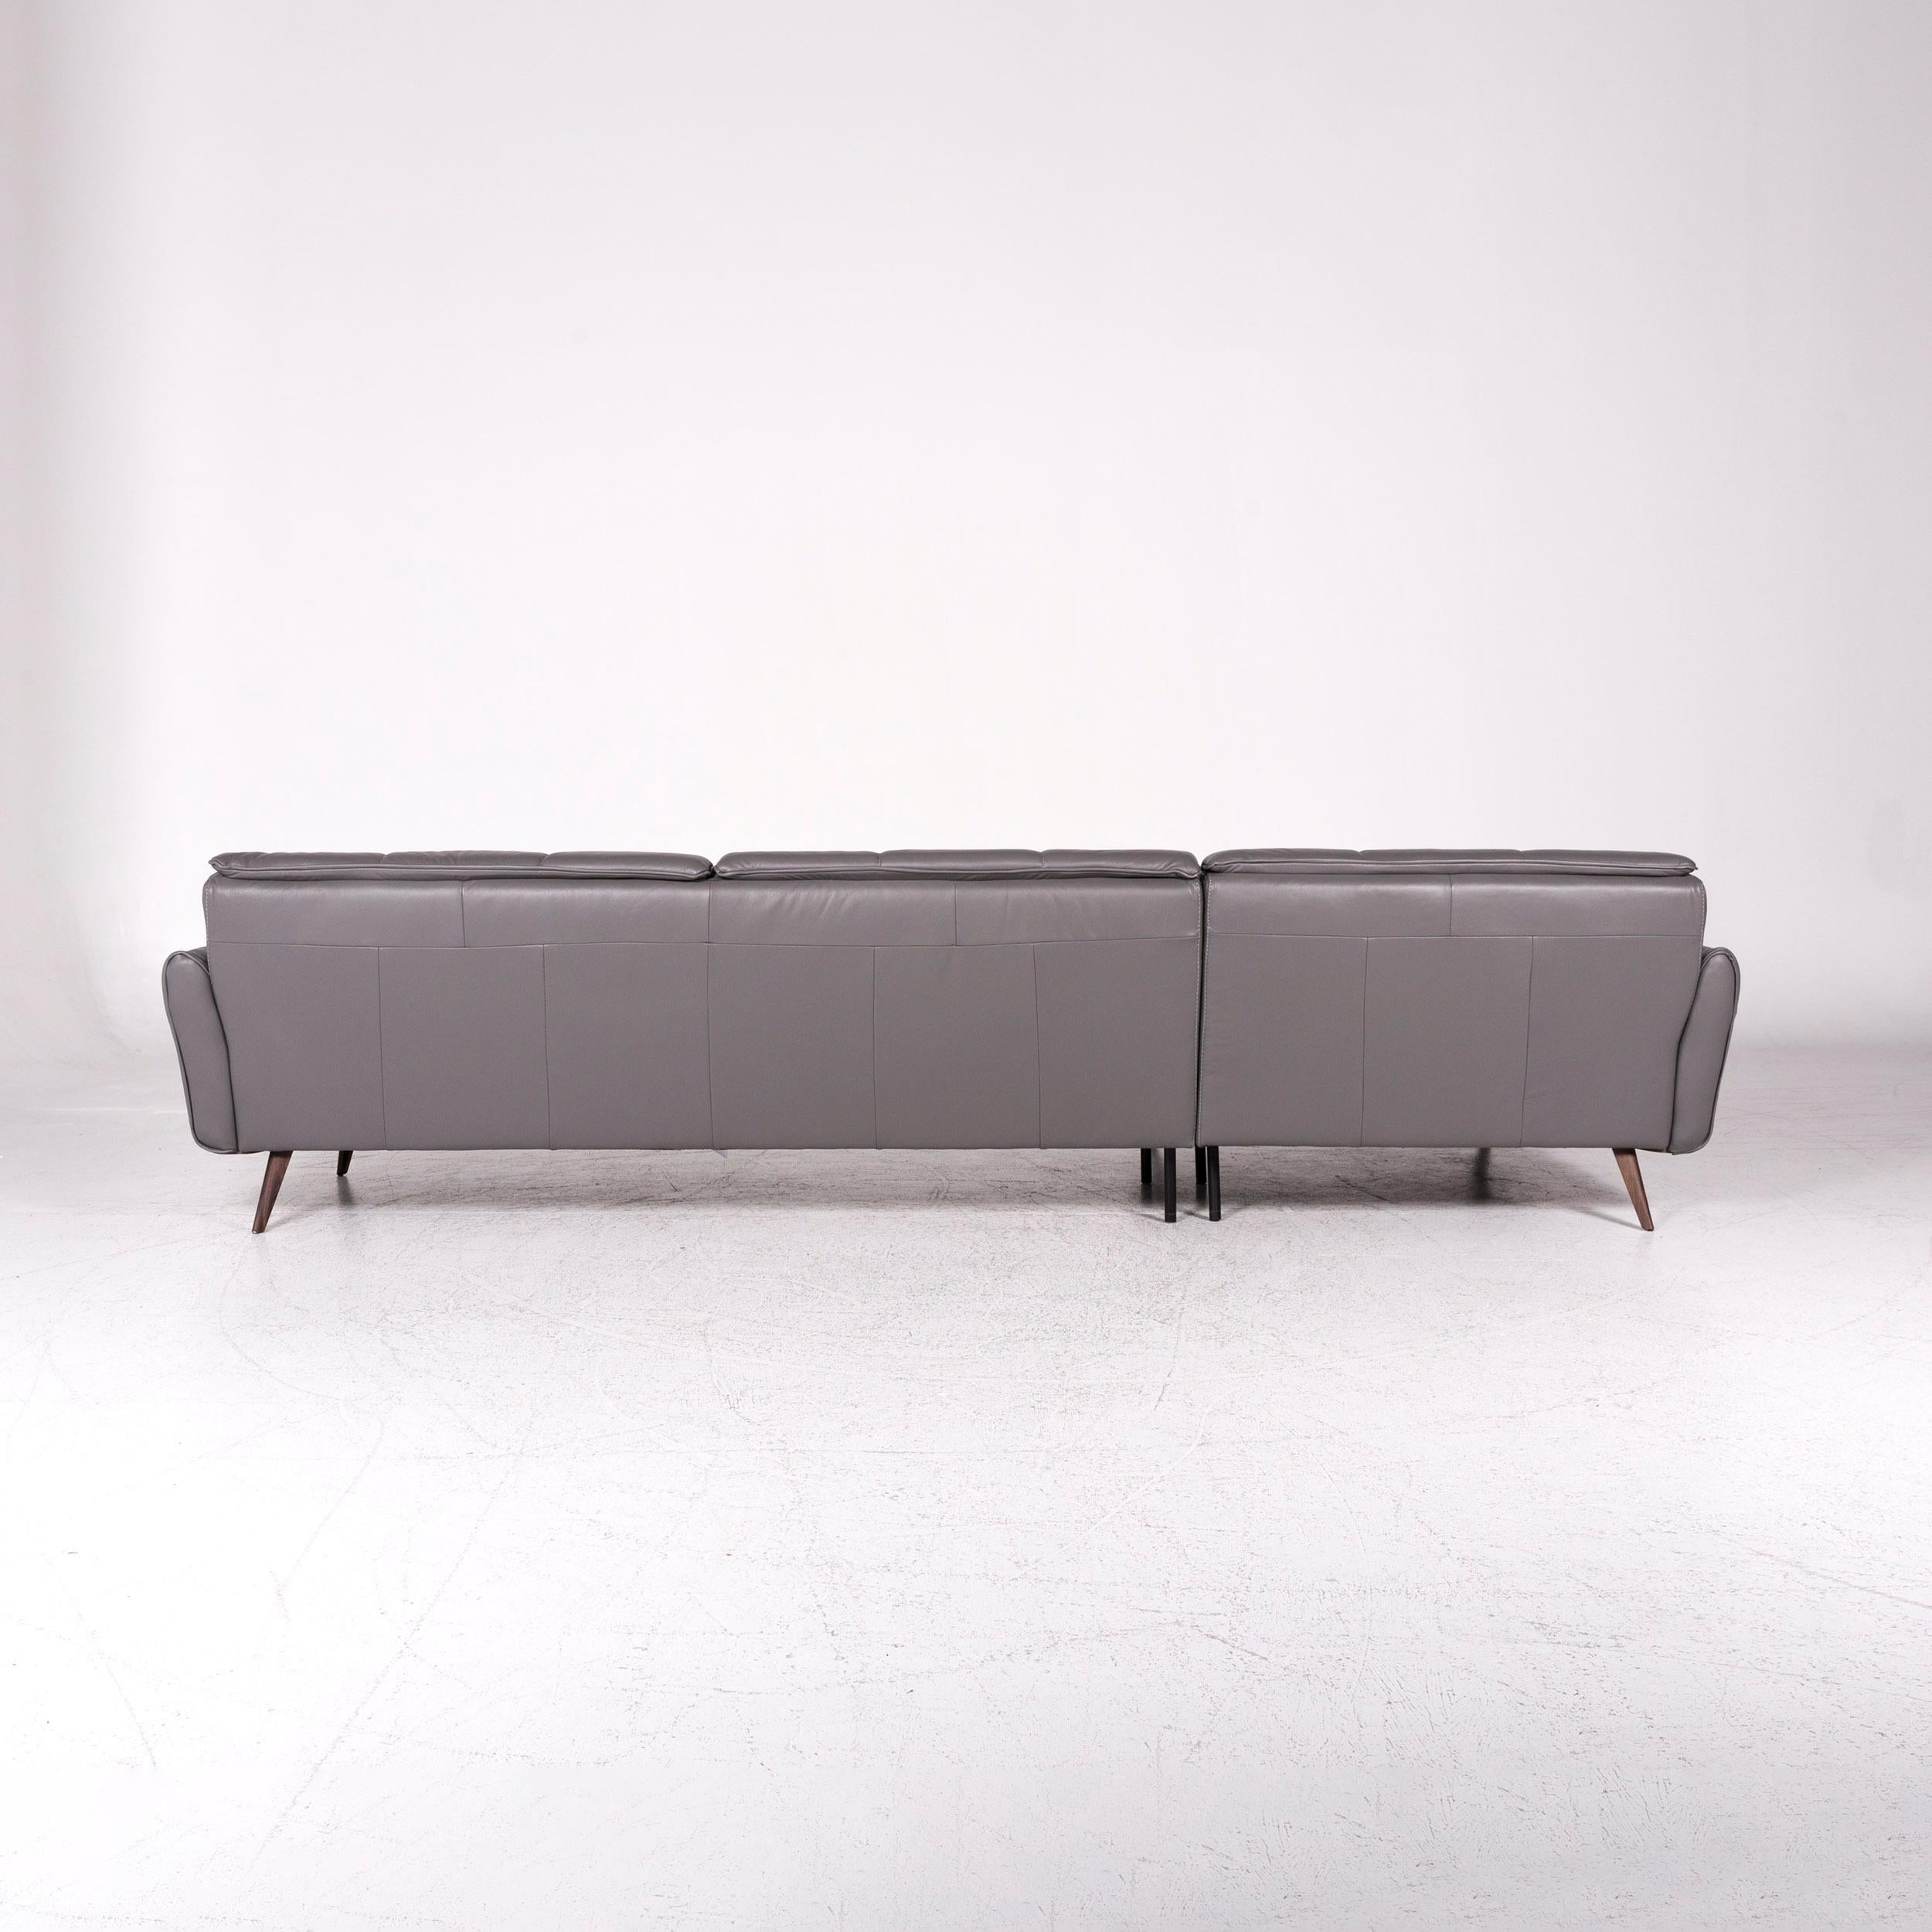 Natuzzi Editions Talento Designer Leather Corner Sofa Gray Sofa Couch 3